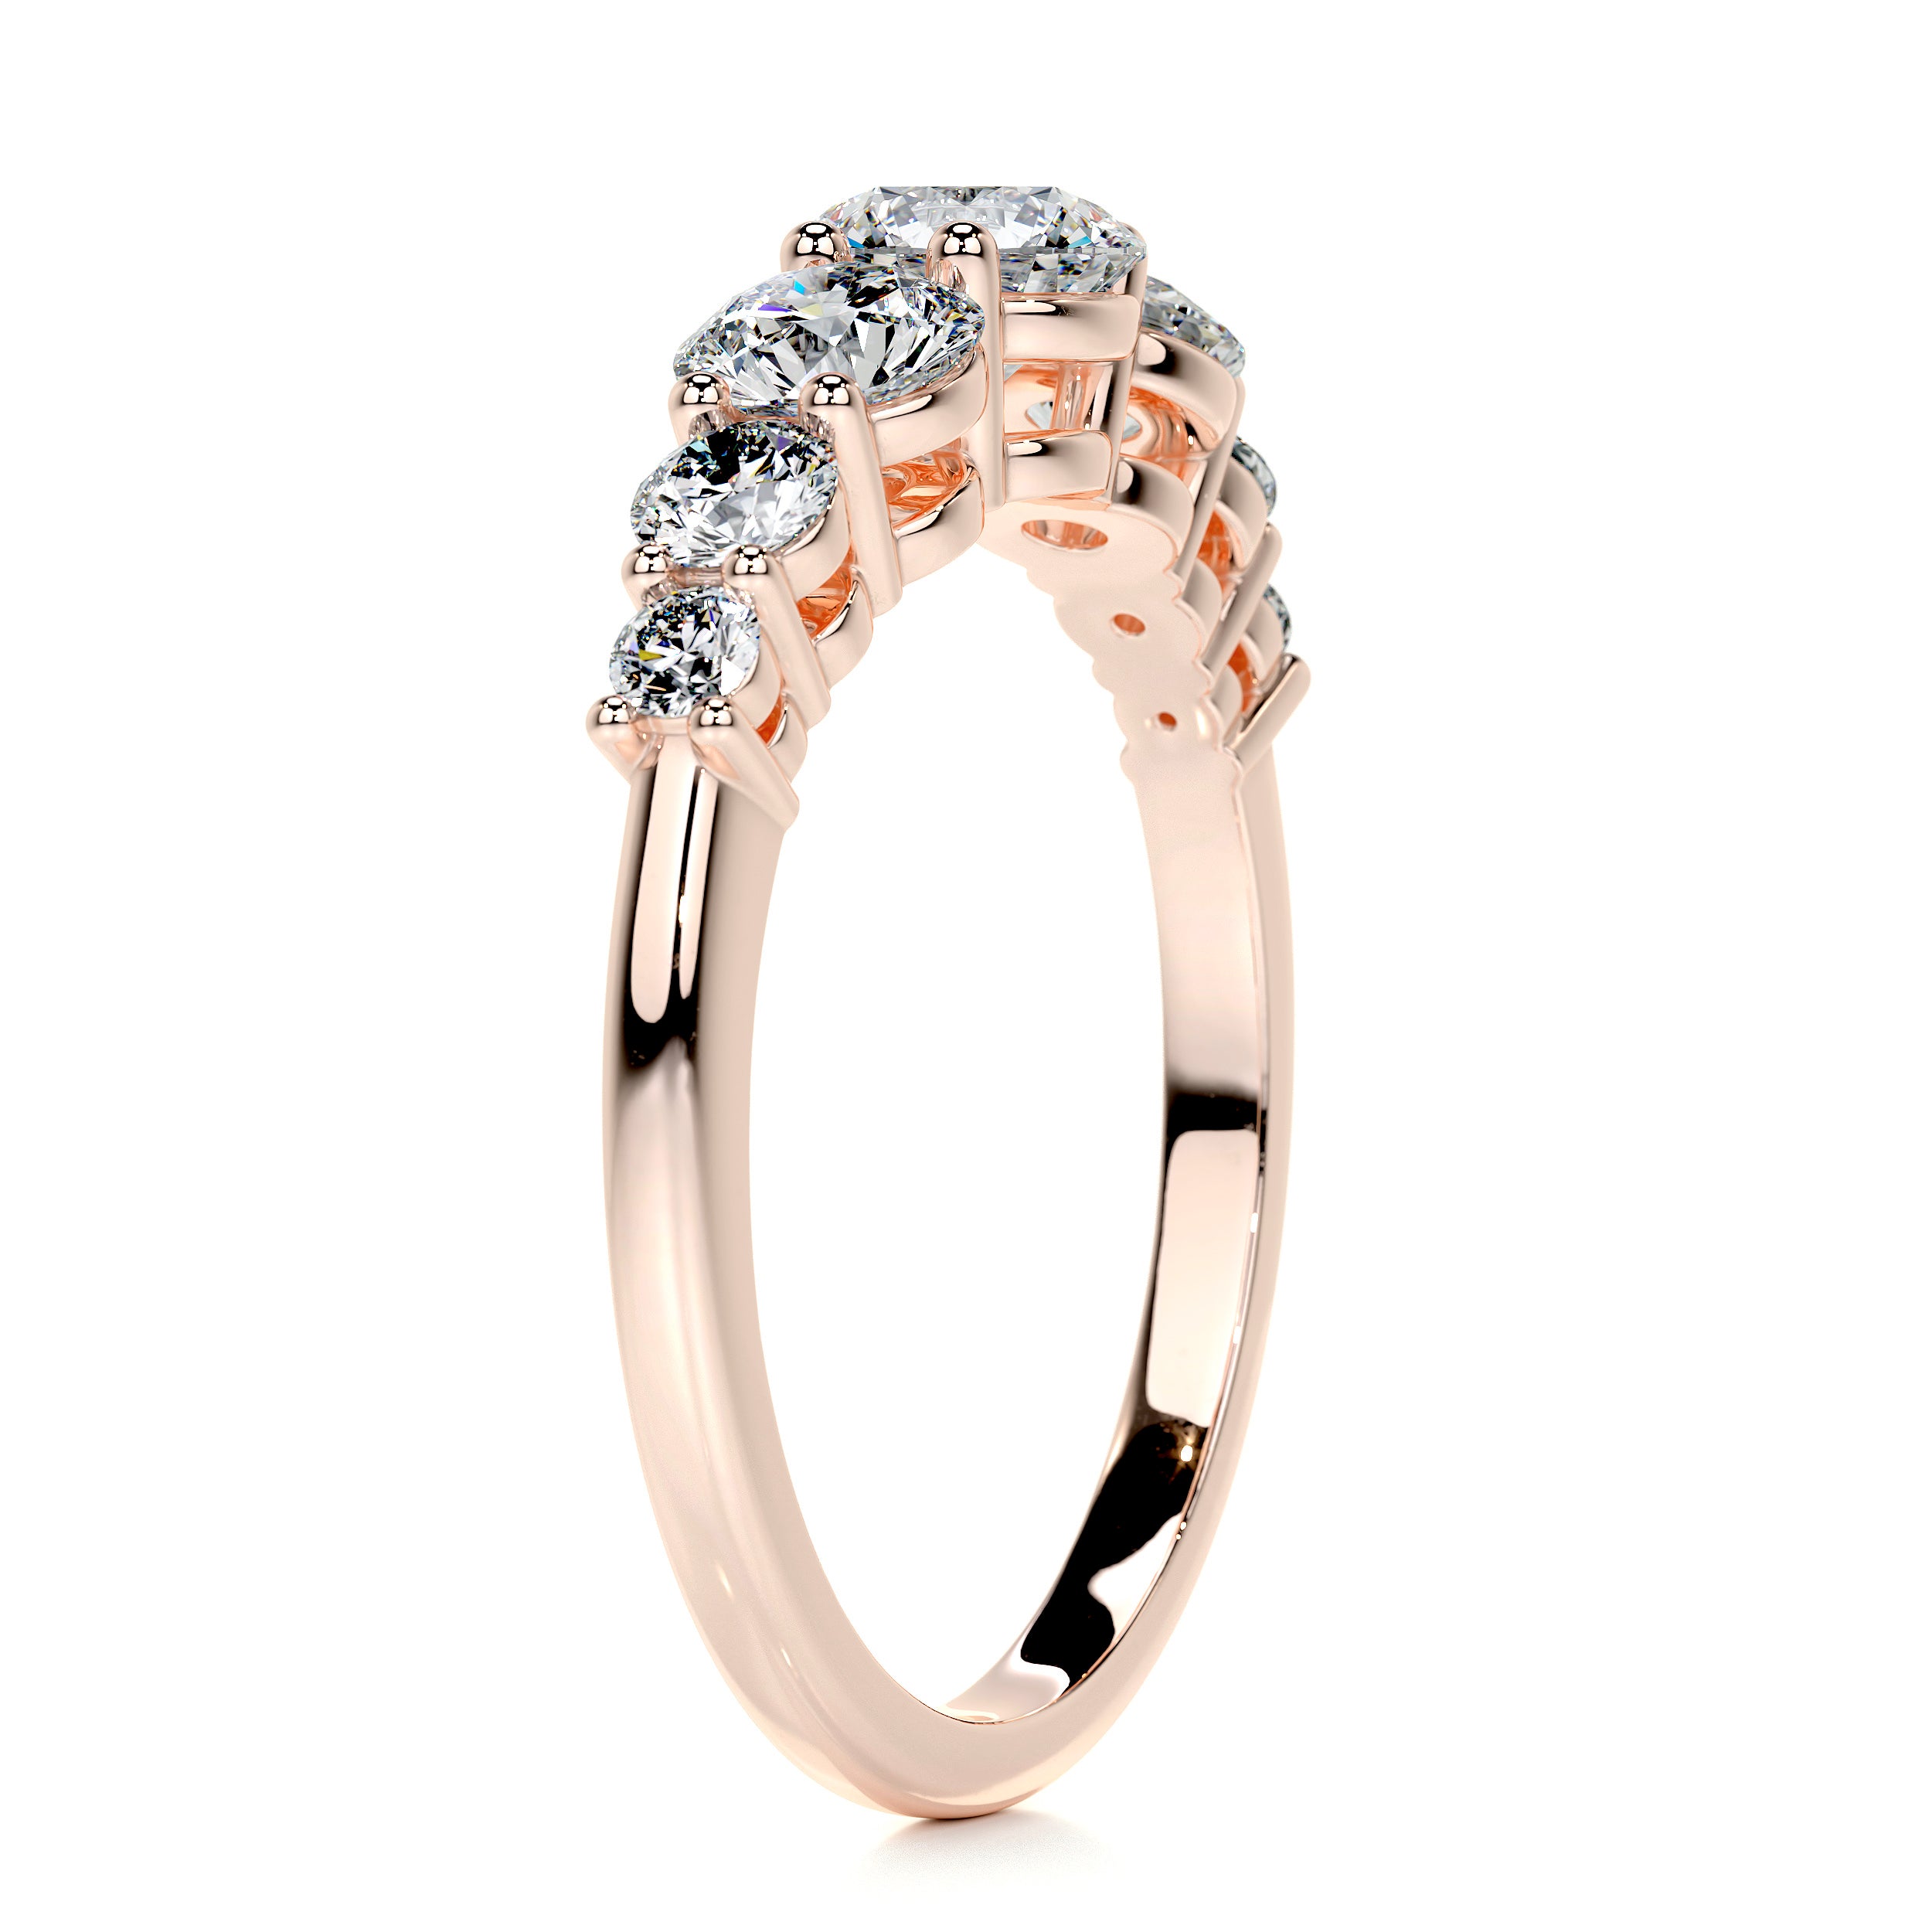 Makenzi Diamond Engagement Ring -14K Rose Gold